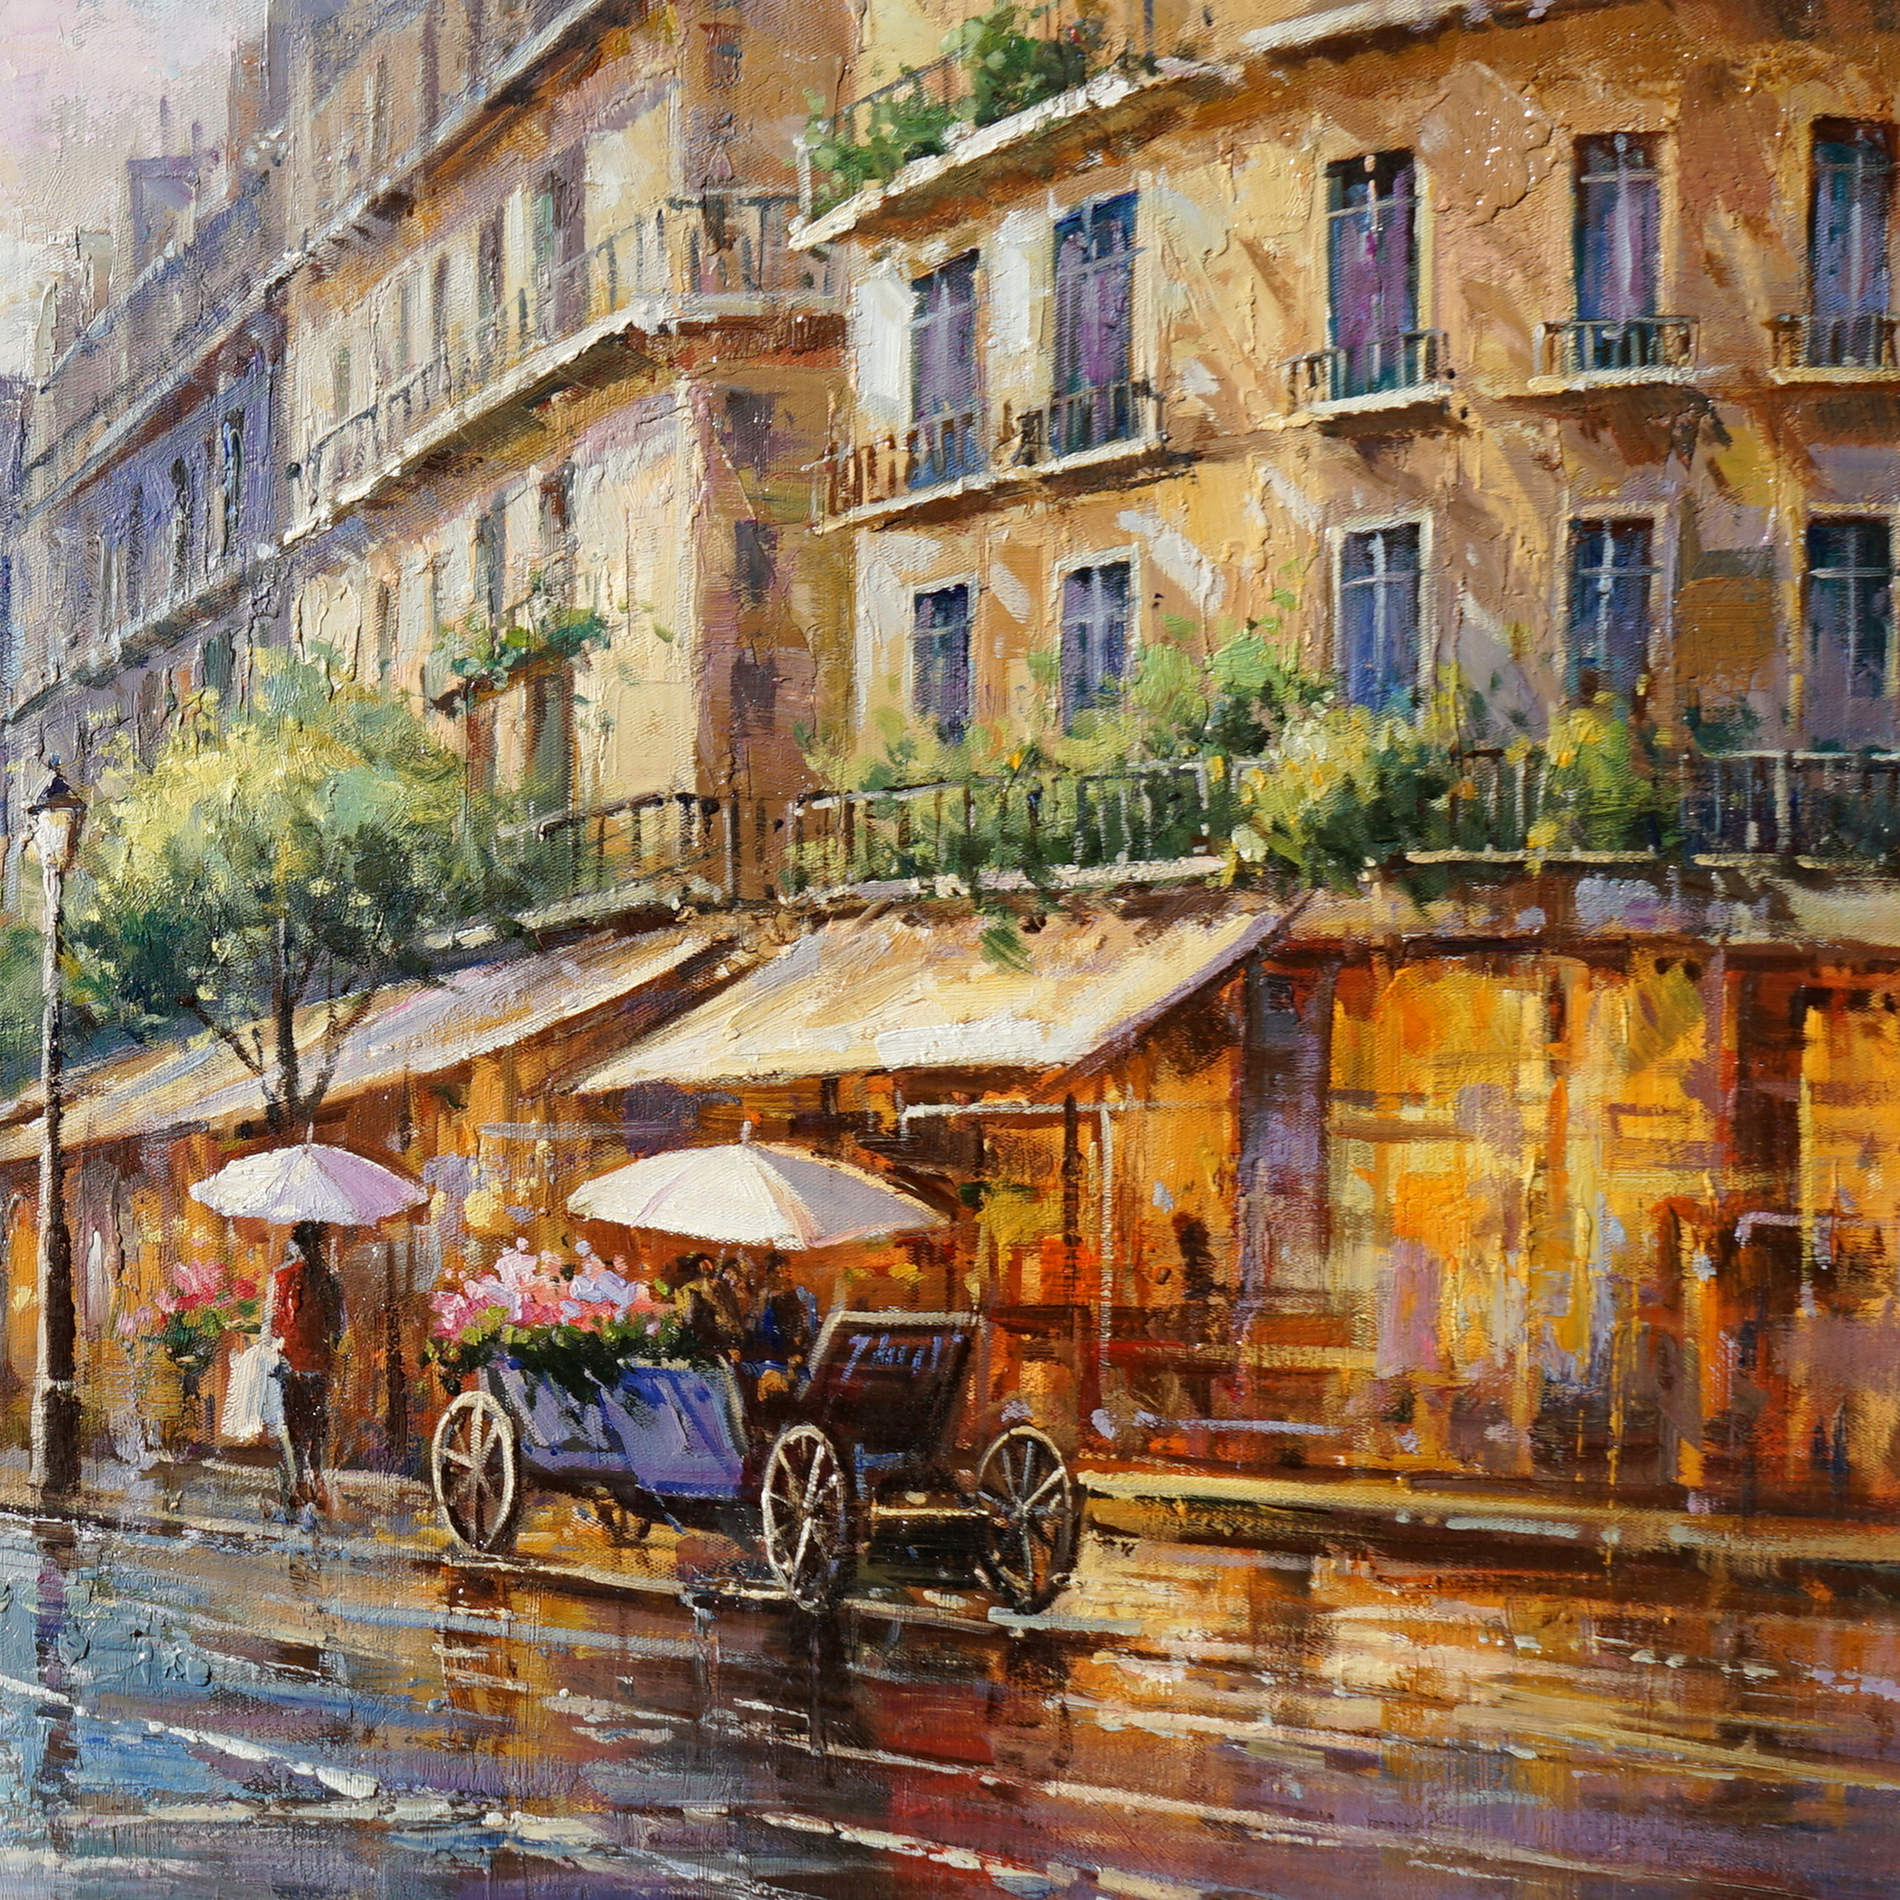 Hand painted Paris in the rain 60x120cm